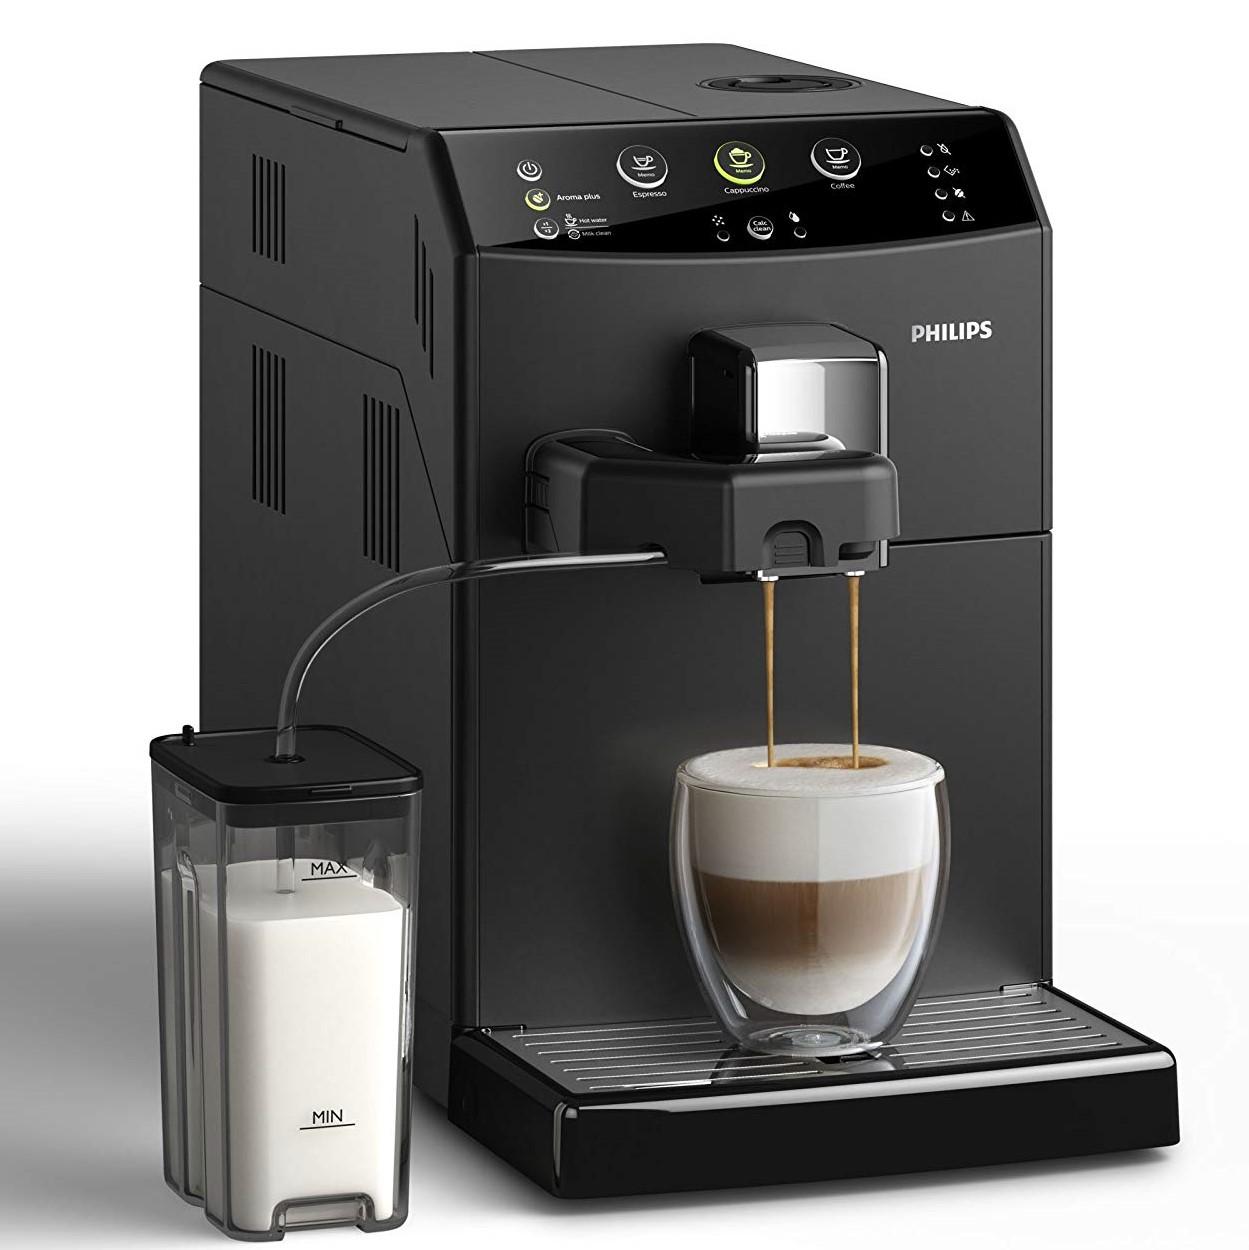 Máy pha cà phê Philips màu đen cá tính mạnh mẽ